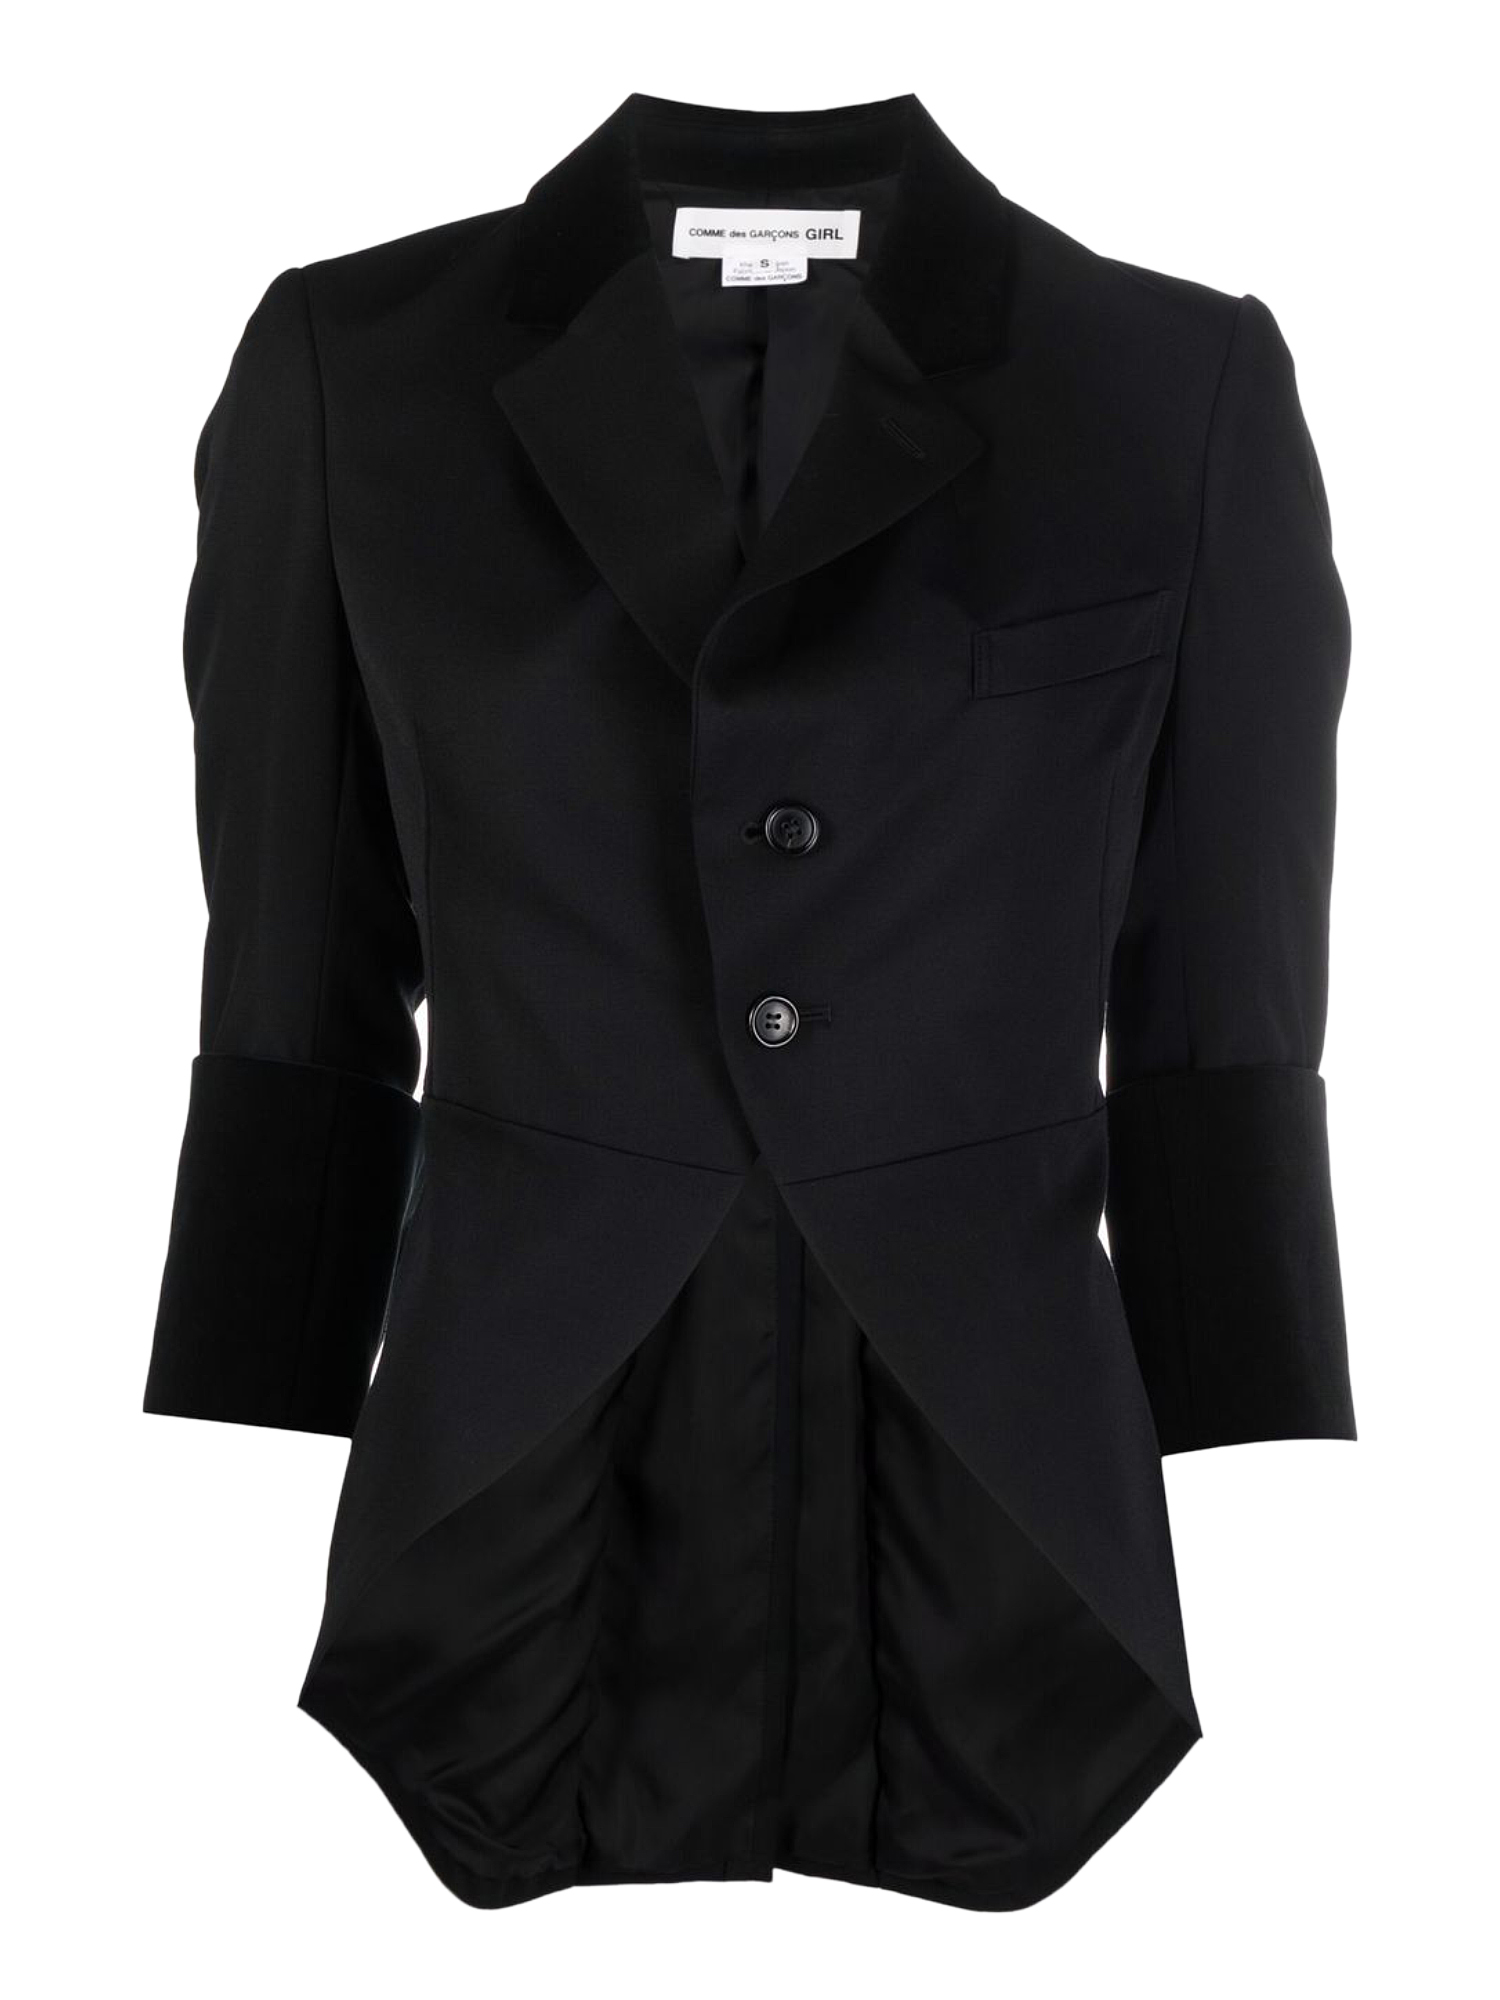 Vestes Pour Femme - Comme Des Garcons - En Wool Black - Taille:  -